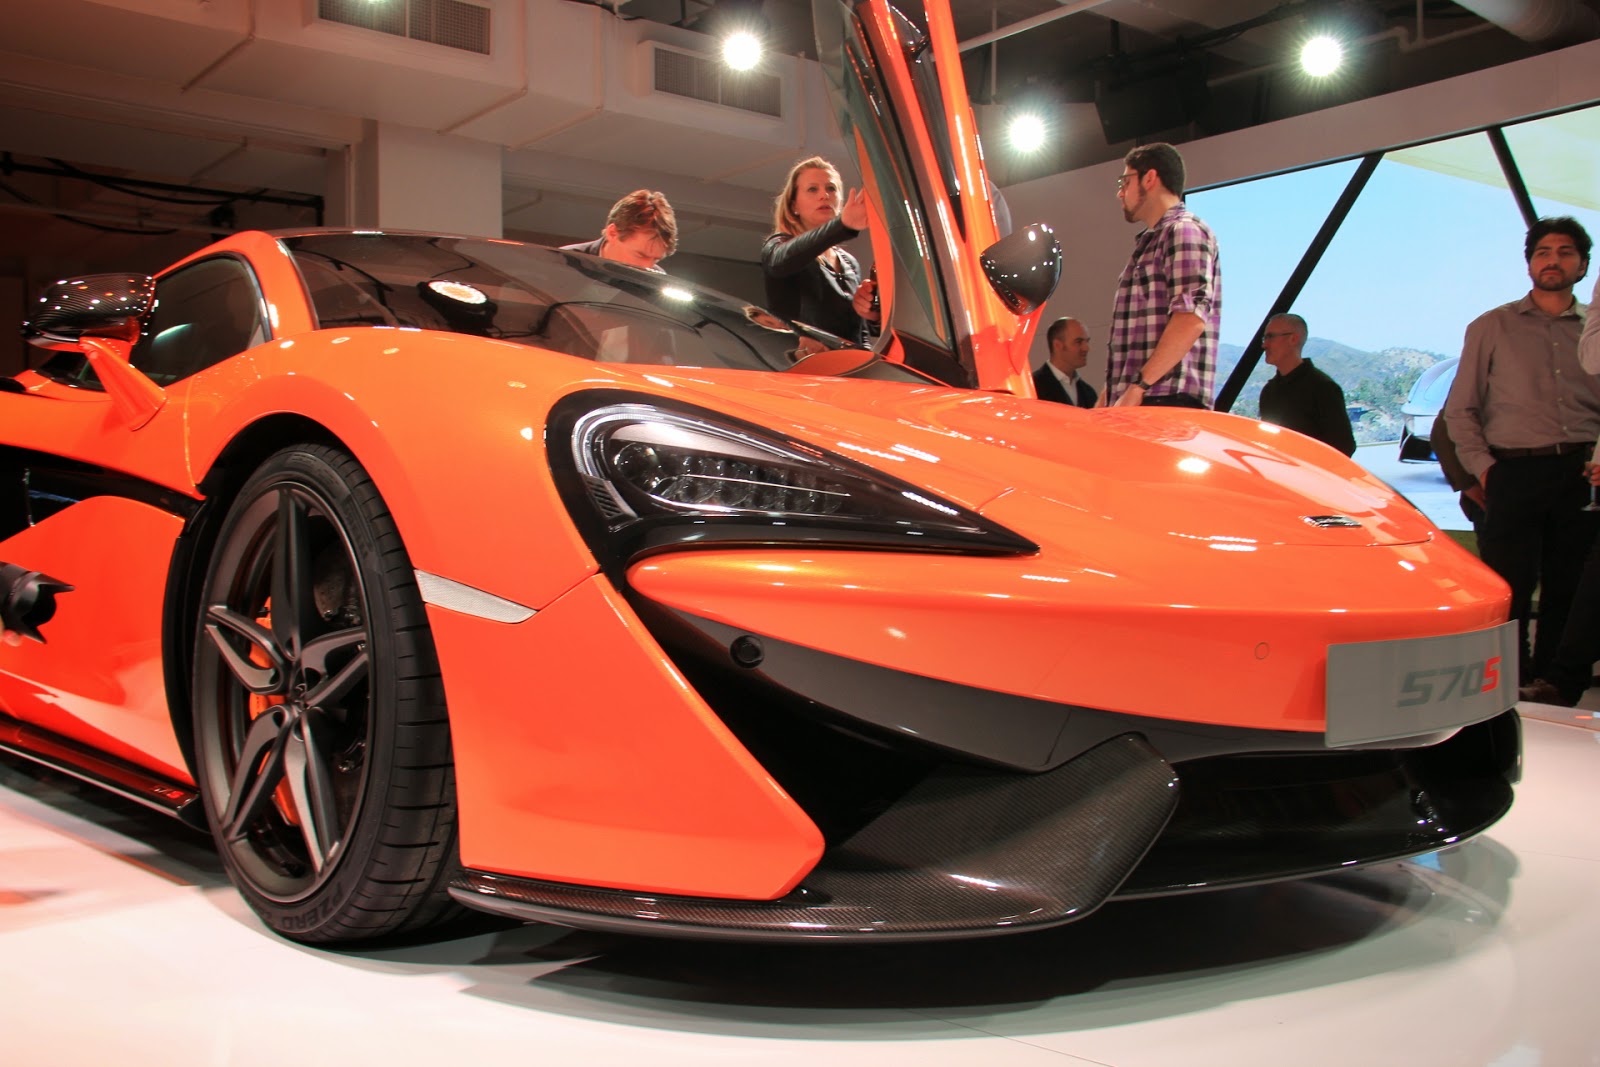 Ra mắt siêu phẩm 570S, McLaren nói không với dòng xe SUV